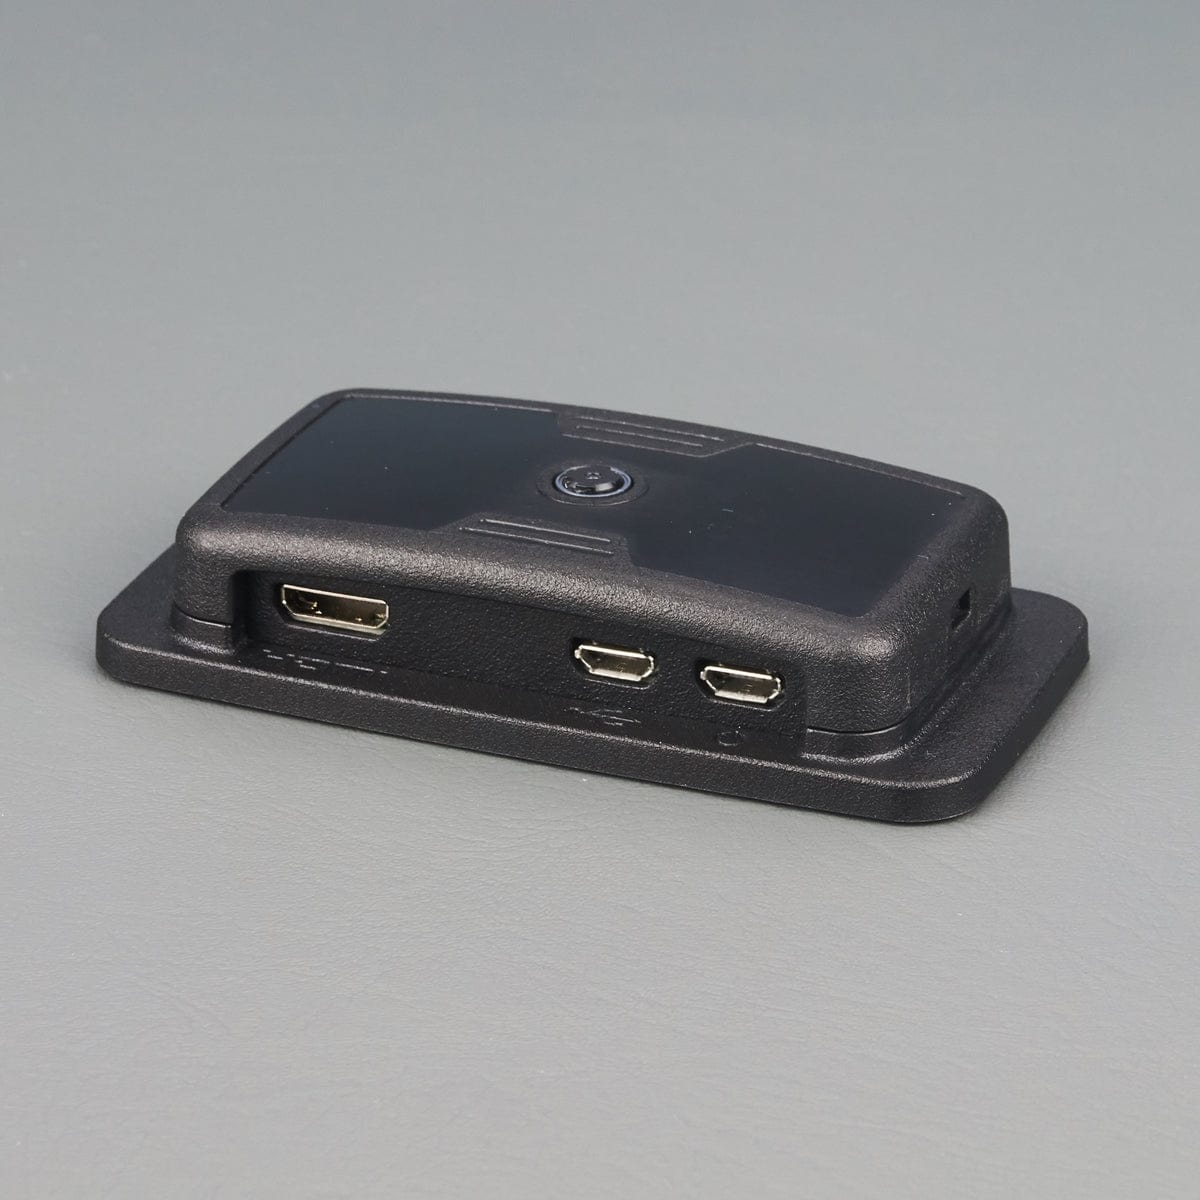 UniPiCase Pi Zero Case - Camera (All Ports) - The Pi Hut